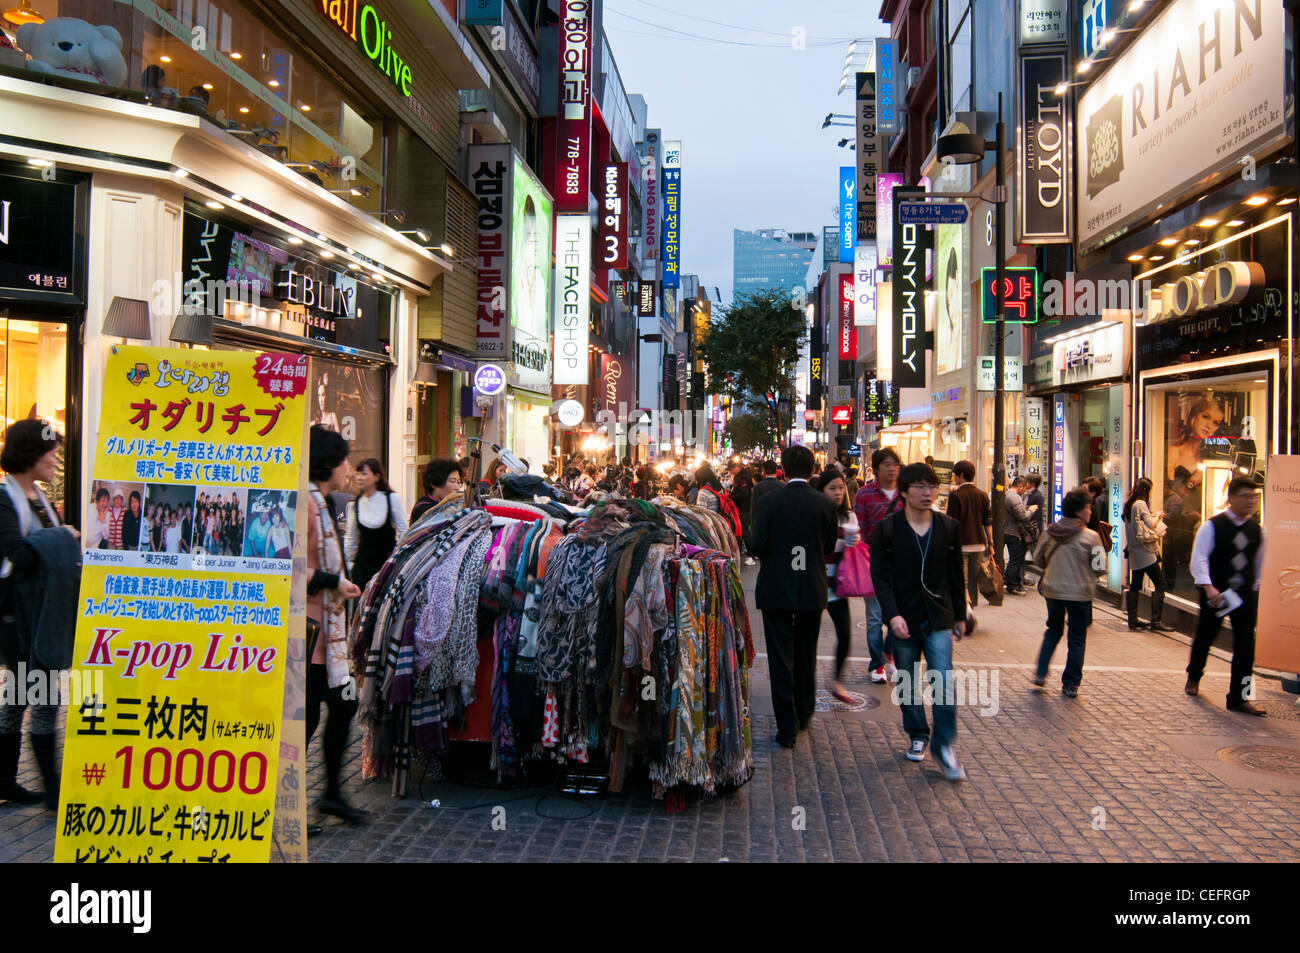 Strade bancarelle che vendono vari articoli di moda di sera nel popolare quartiere dello shopping di a Myeongdong a Seoul, Corea del Sud Foto Stock